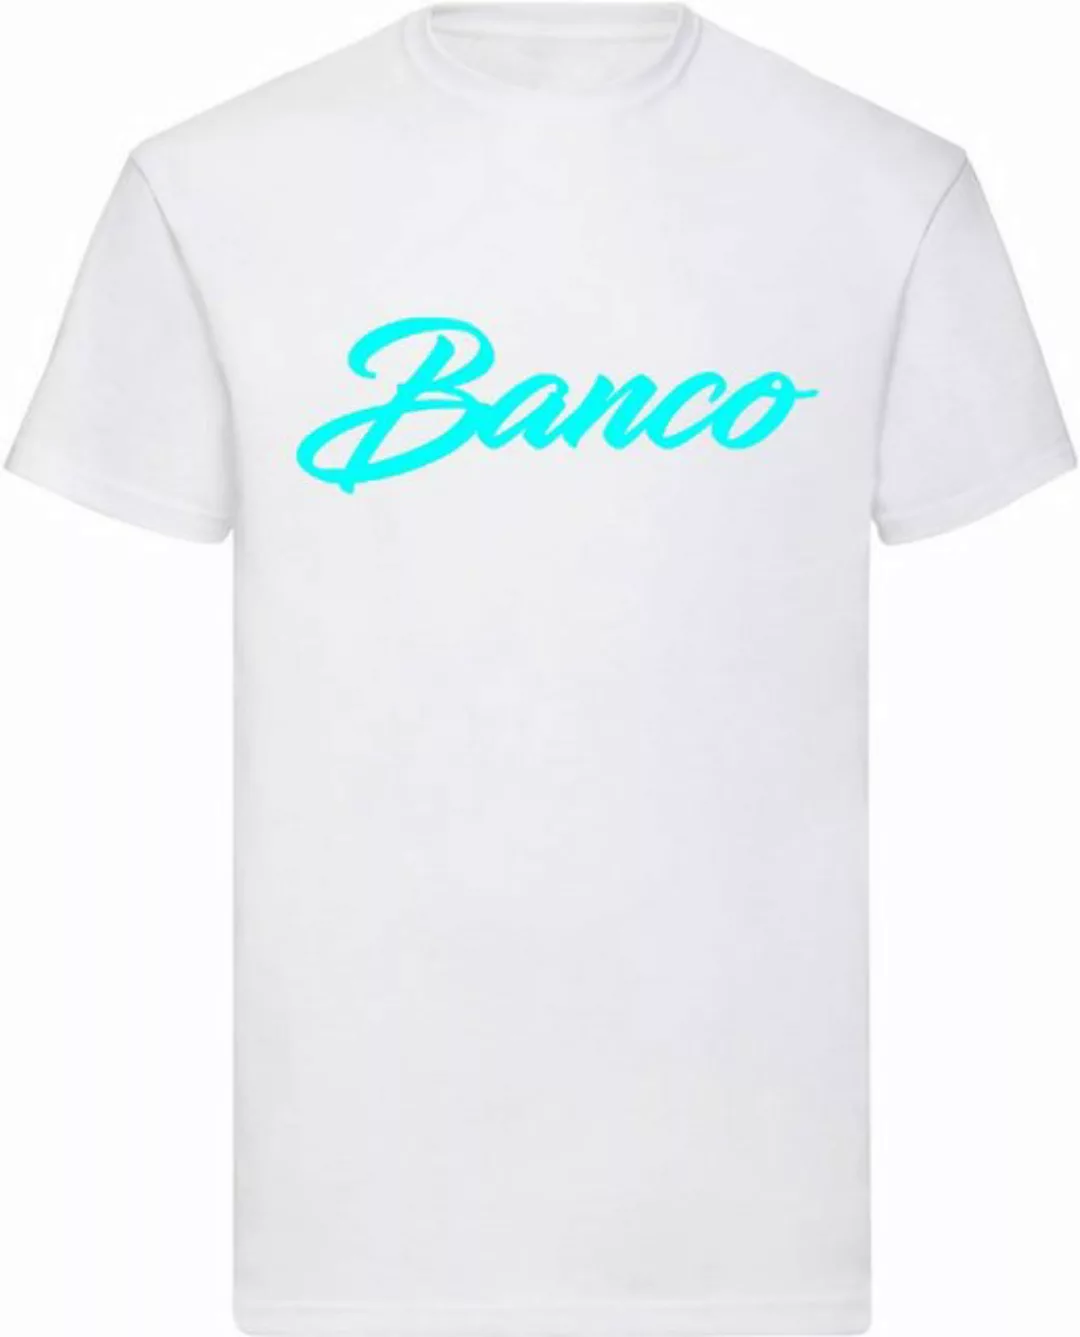 Banco T-Shirt Herren Kurzarm Rundhals Shirt Sommer Sport Freizeit Streetwea günstig online kaufen